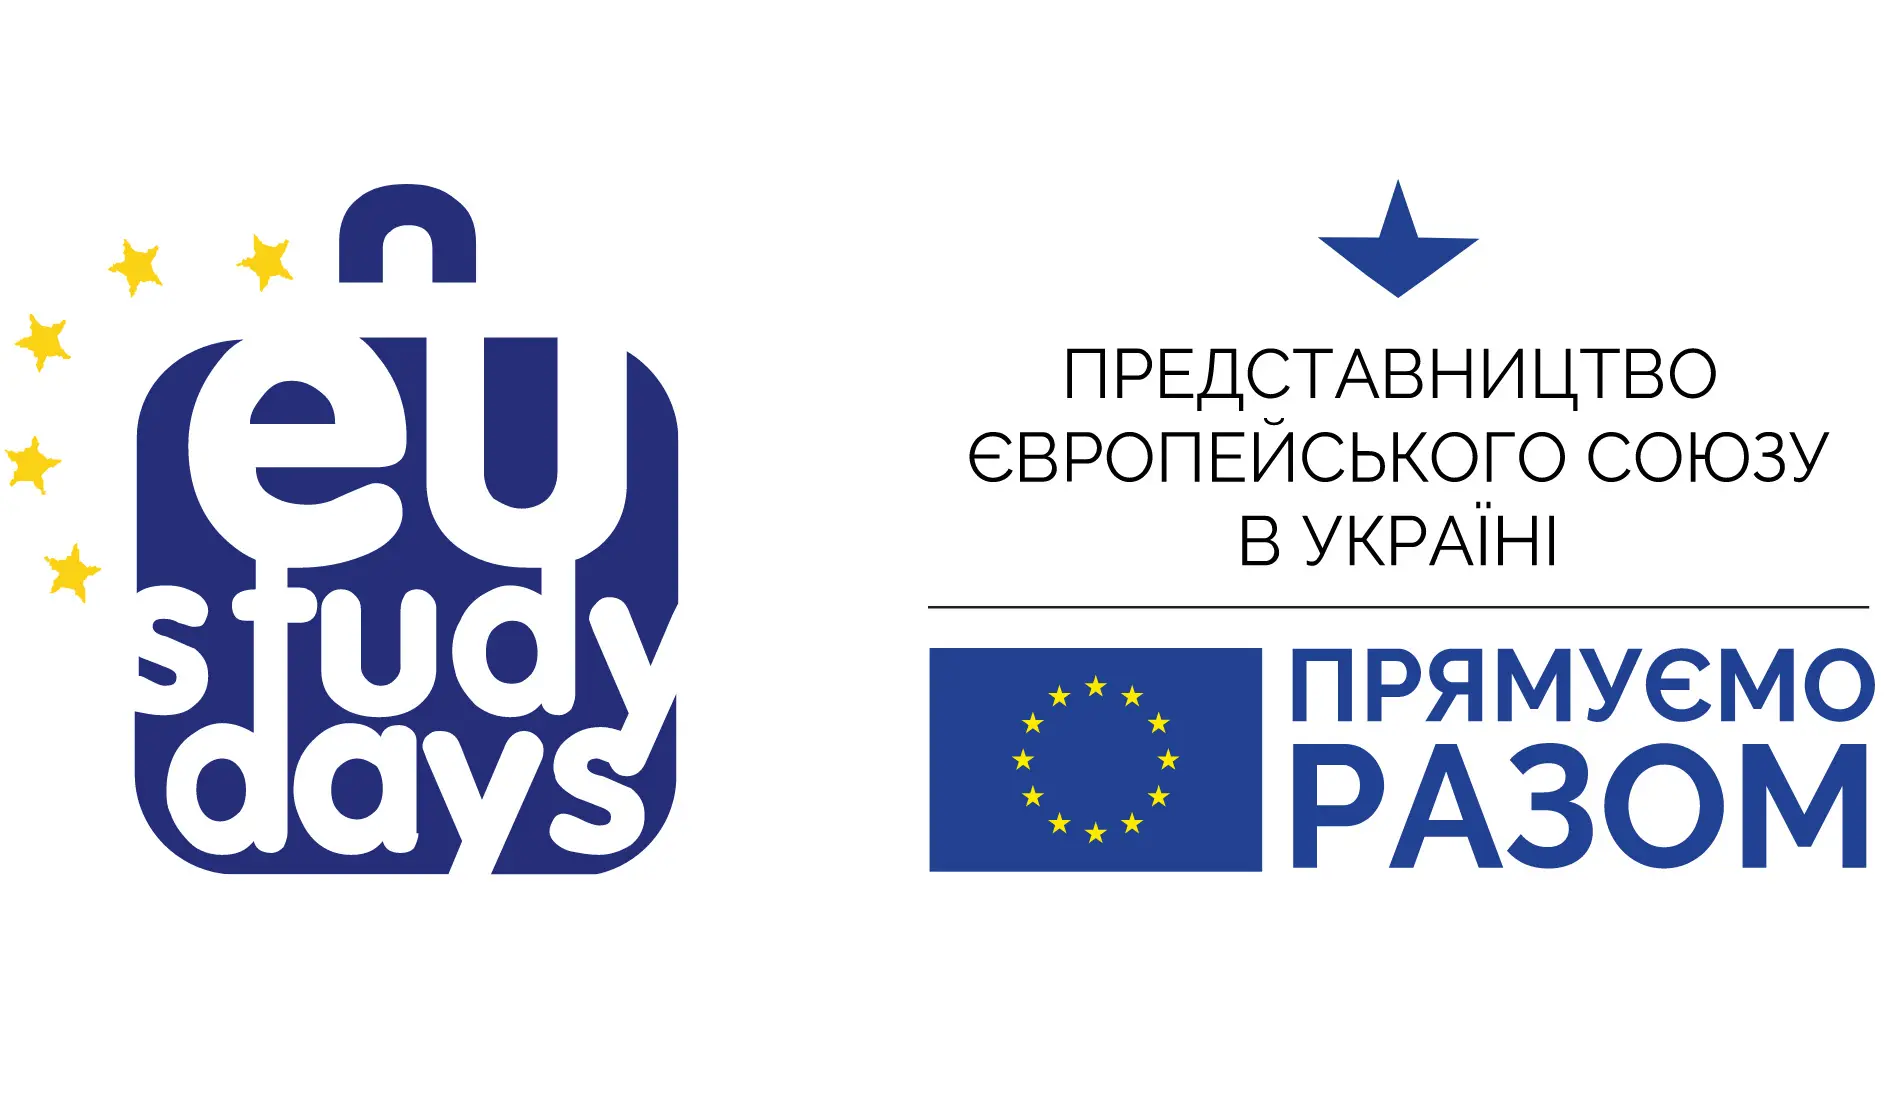 Представництво ЄС в Україні оголошує відбір учасників освітнього проєкту «Єврошколи»